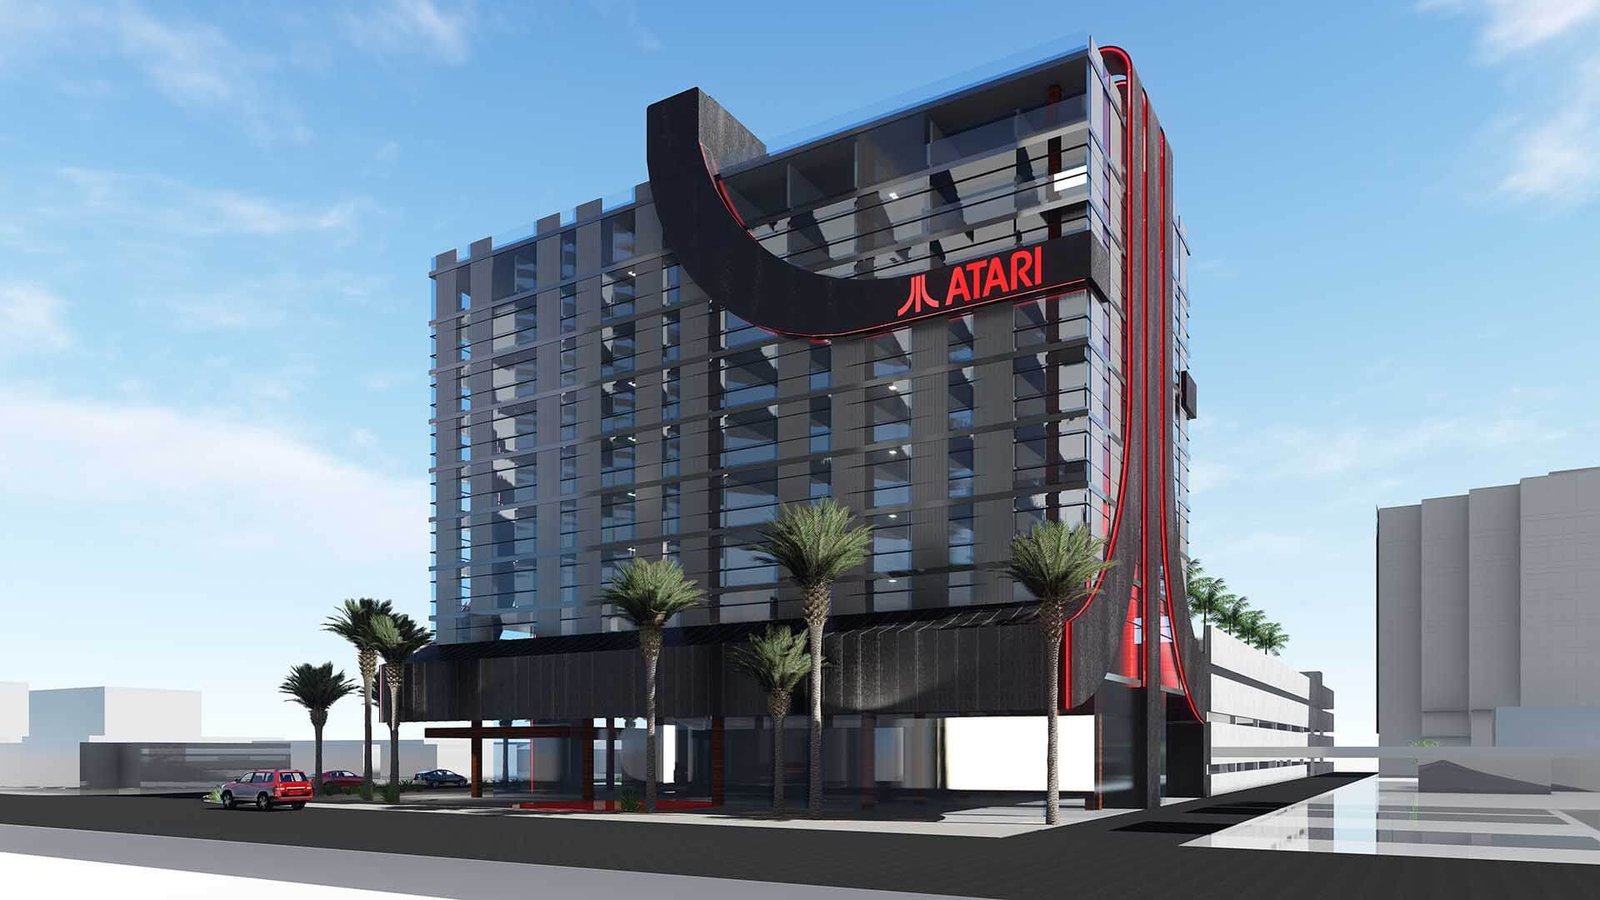 Atari retornará aos negócios com uma rede de hotéis temática